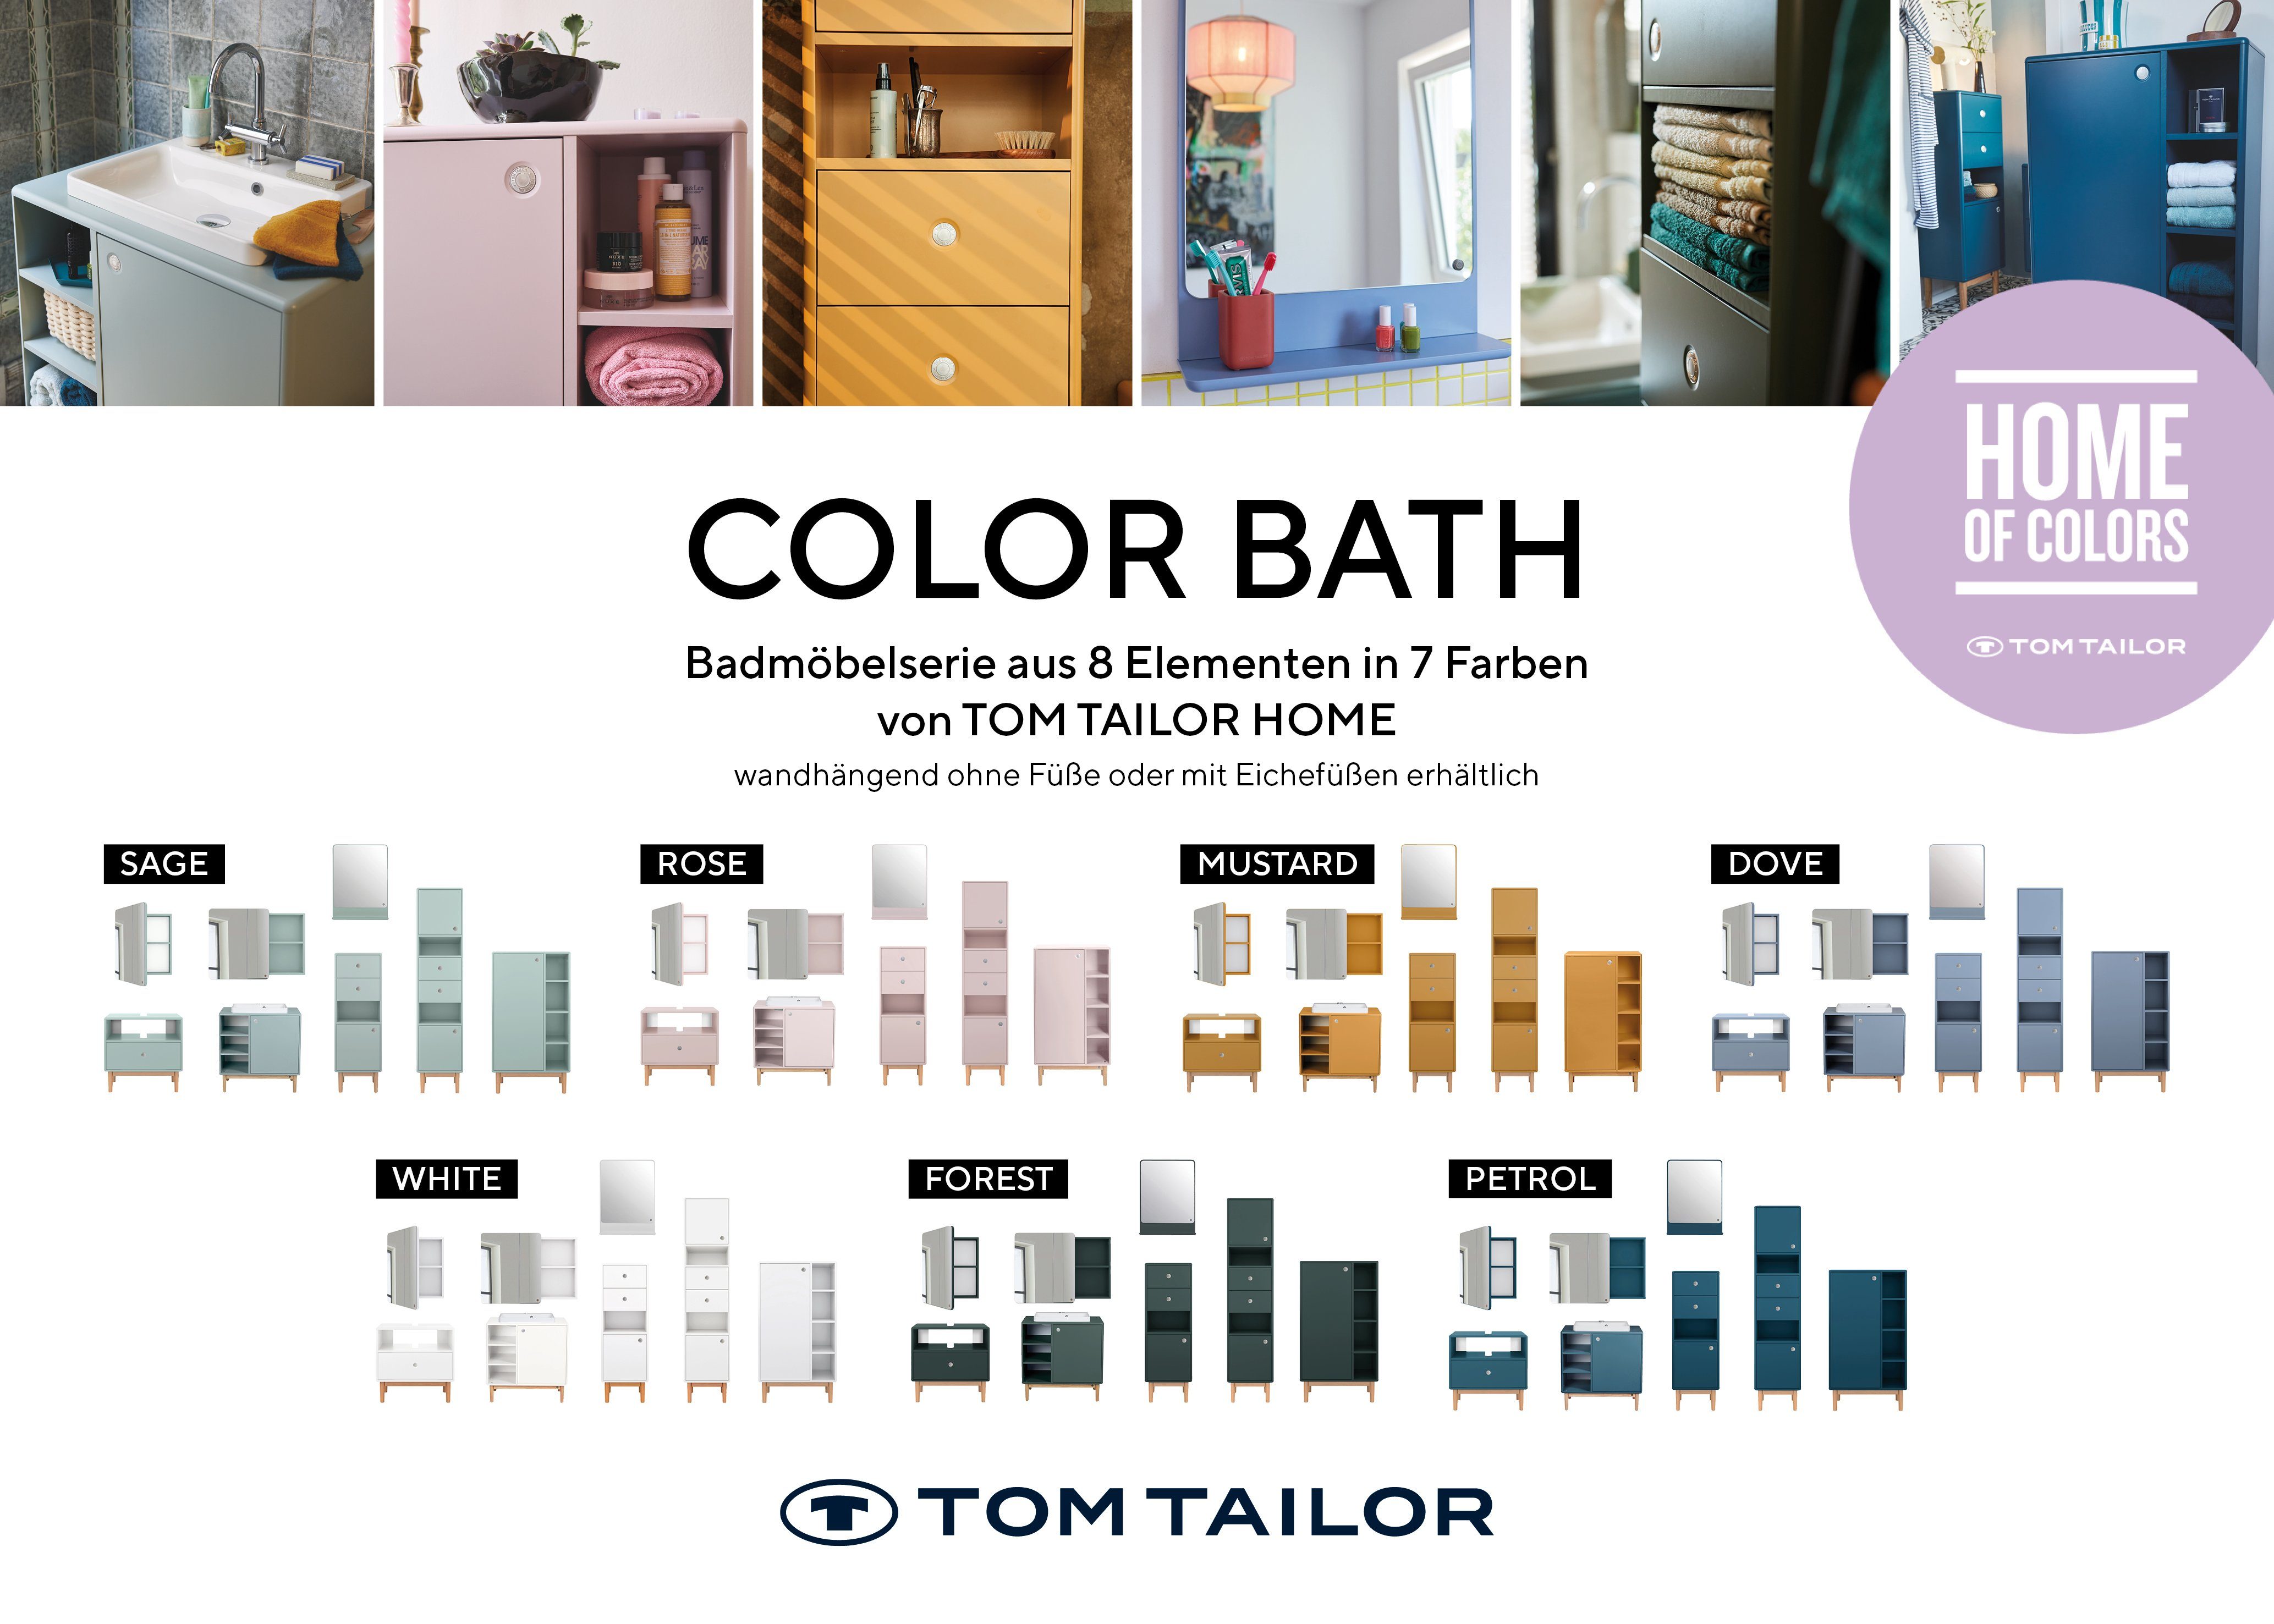 TOM TAILOR HOME Badspiegel Mirror Stauraum, lackiert in gerundeten Tür petrol023 Tür - Farben, aus BATH MDF Ecken, Small mit seidenmatt - mit vielen COLOR mit